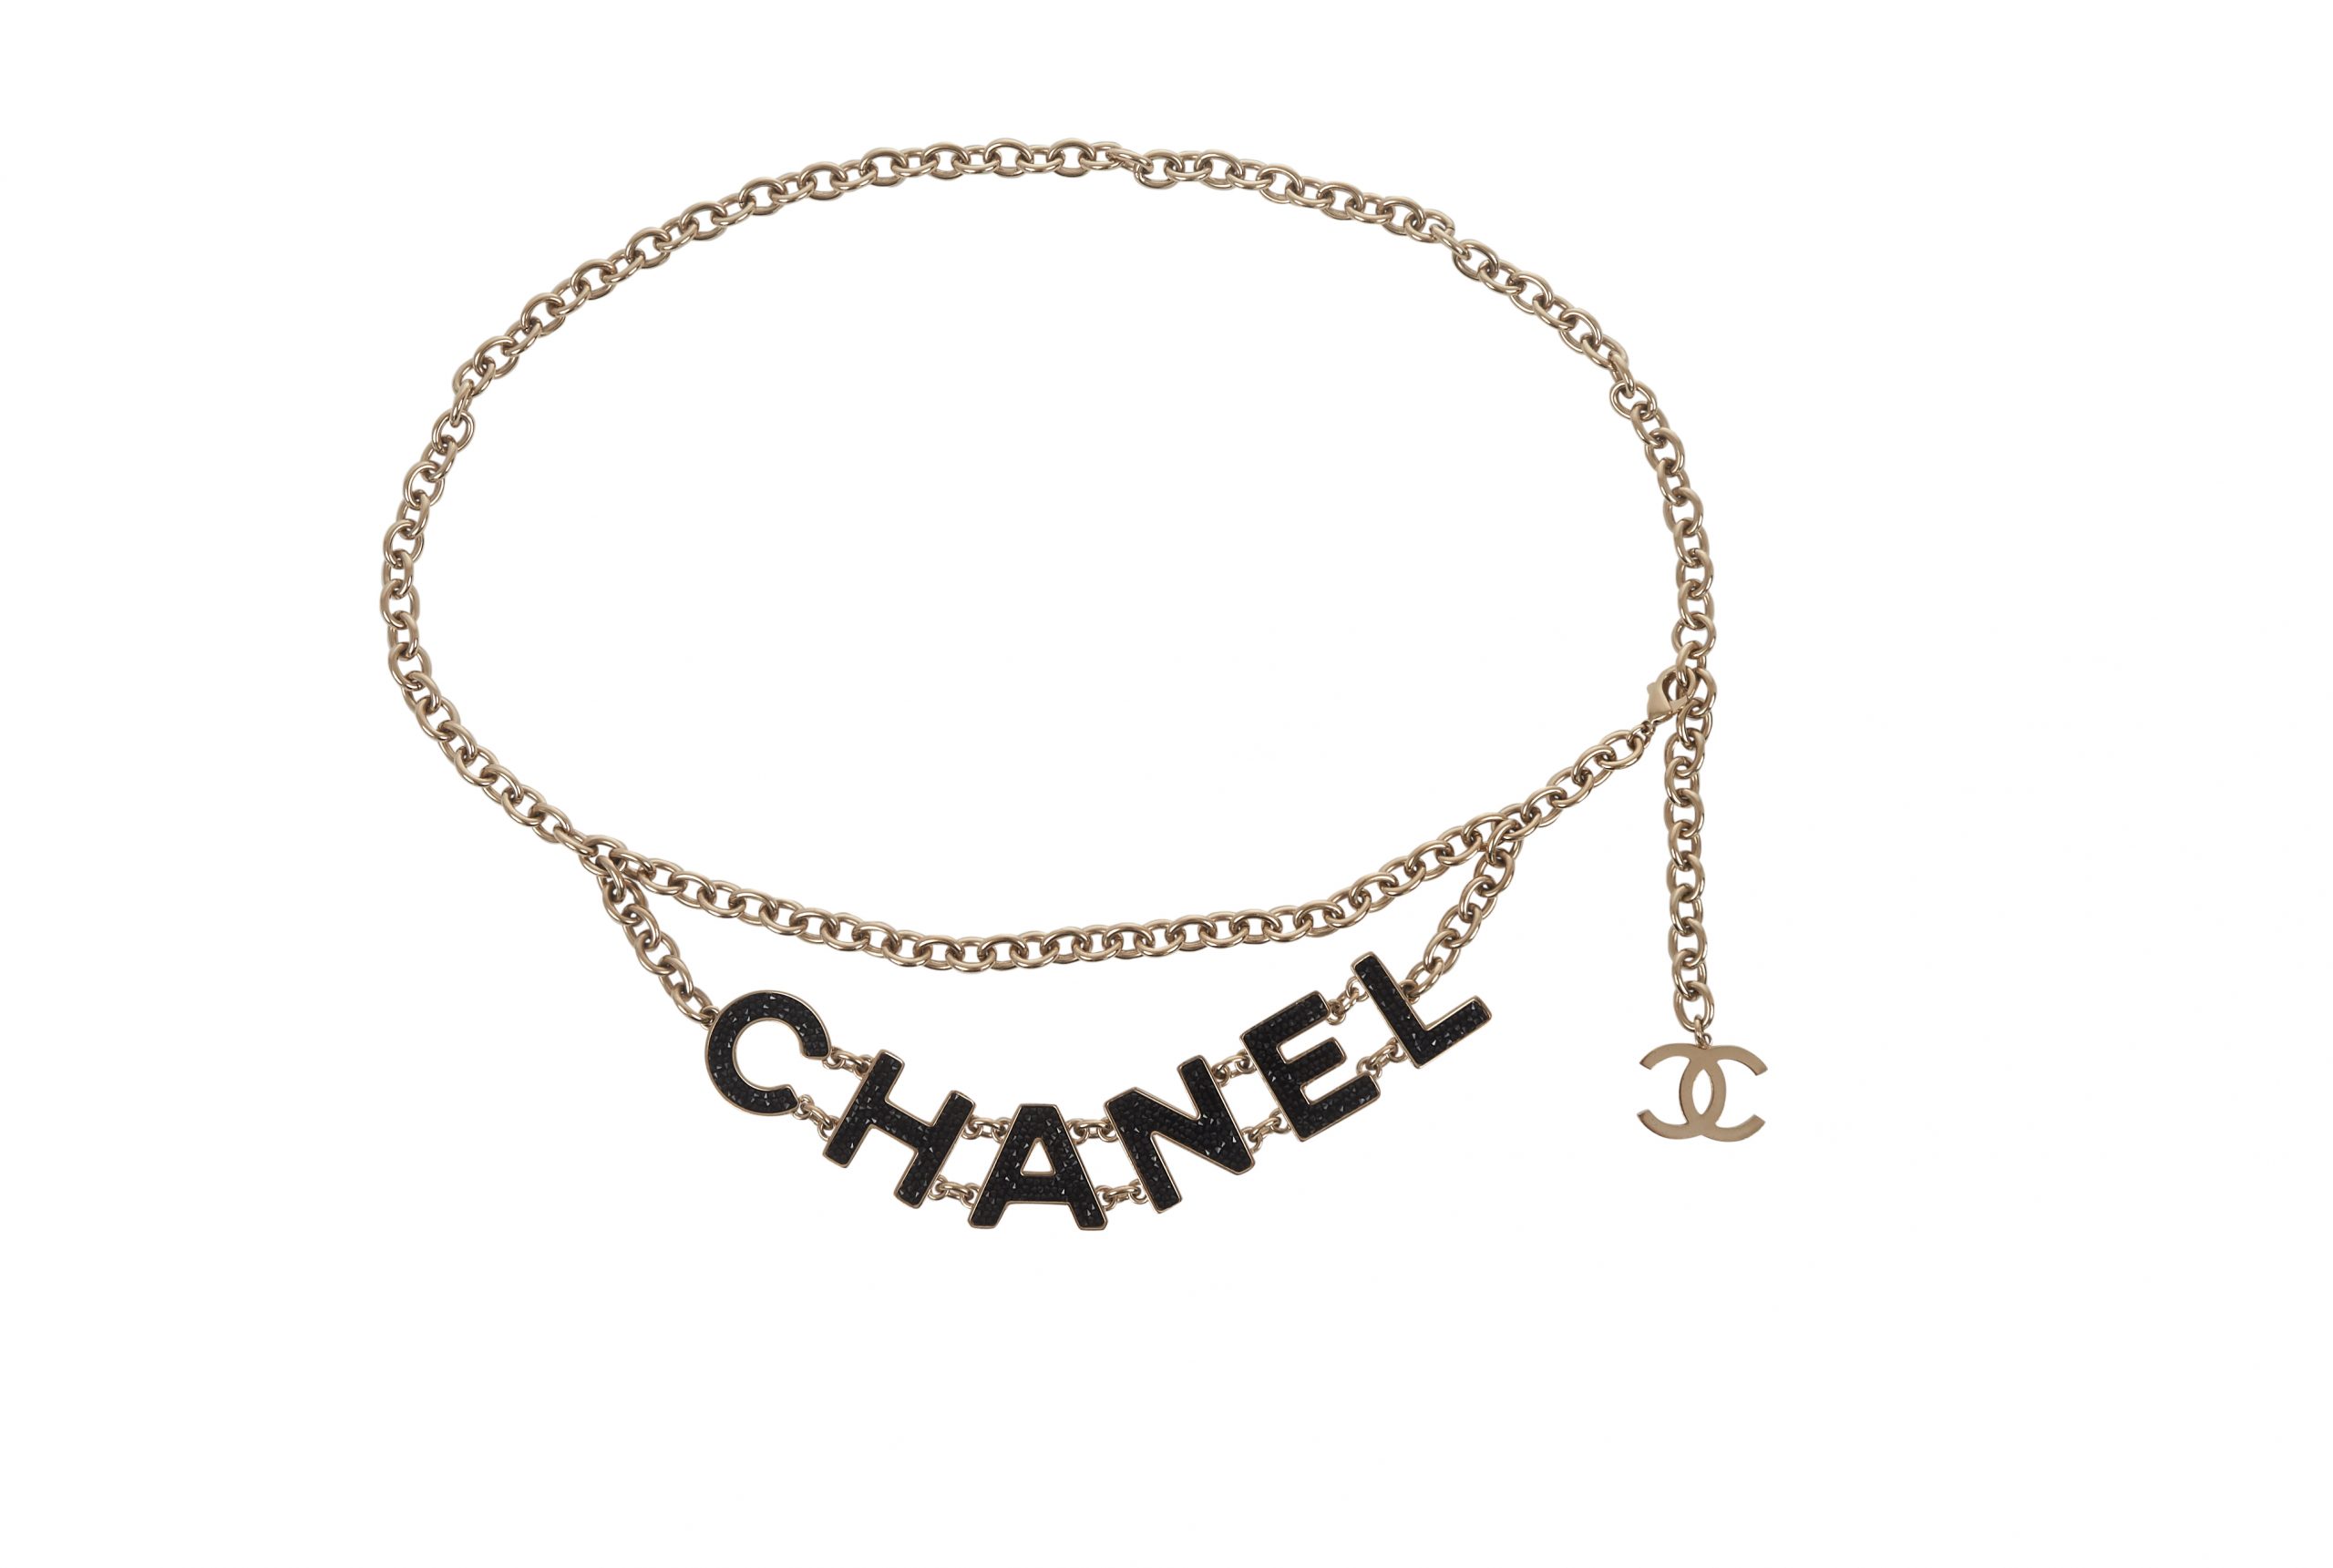 Chanel Letter Chain Belt Janet Mandell